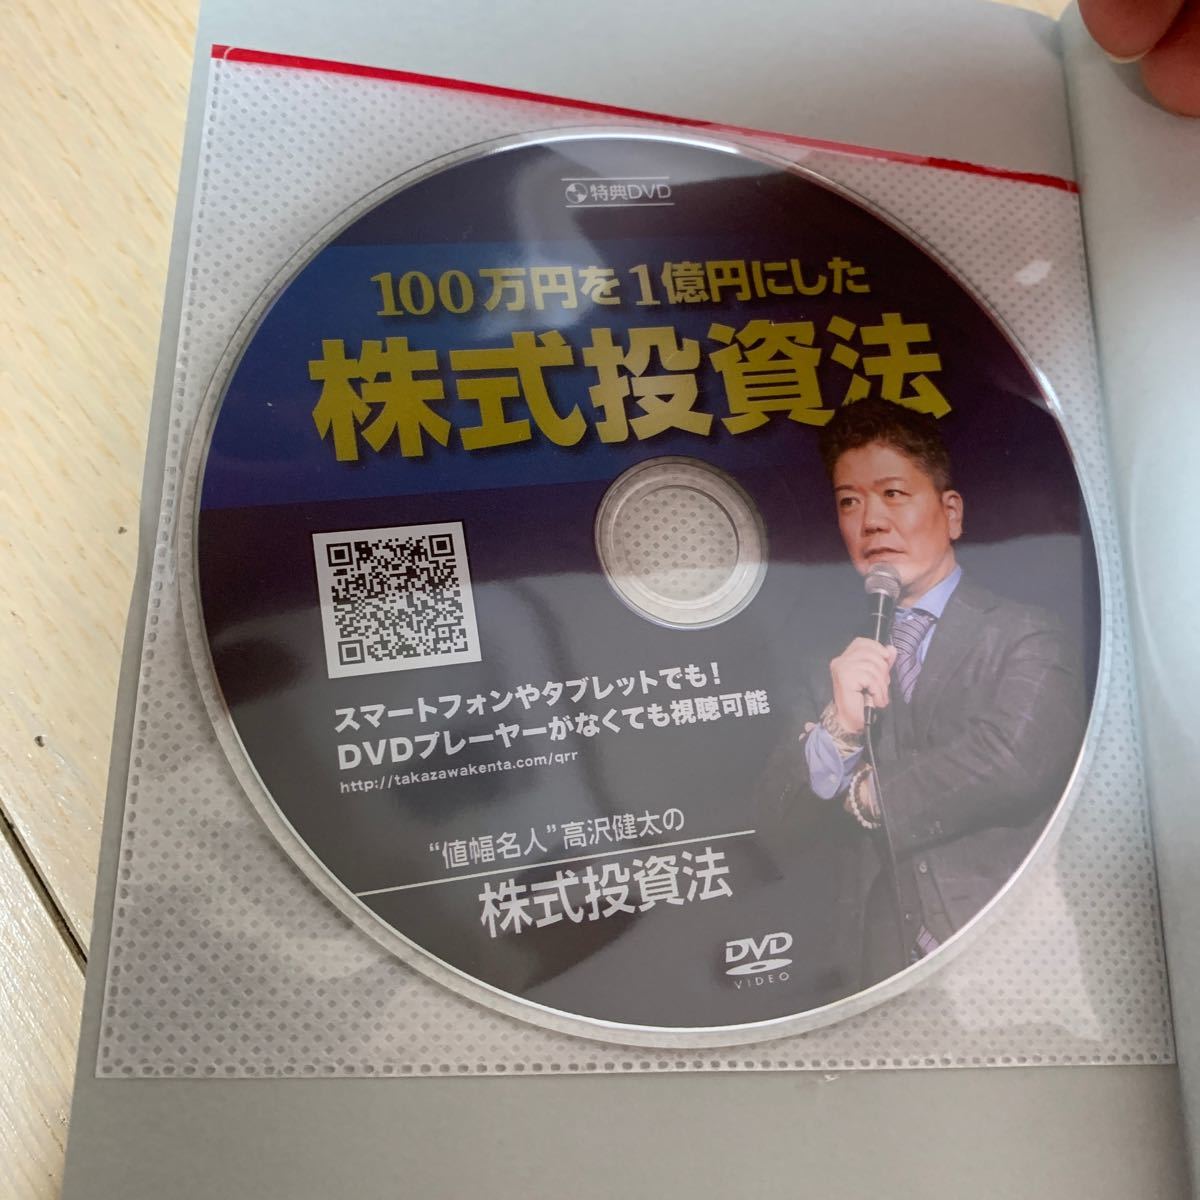 単行本 (実用) ≪政治経済社会≫ DVD付) 最強株式投資 2020改訂版